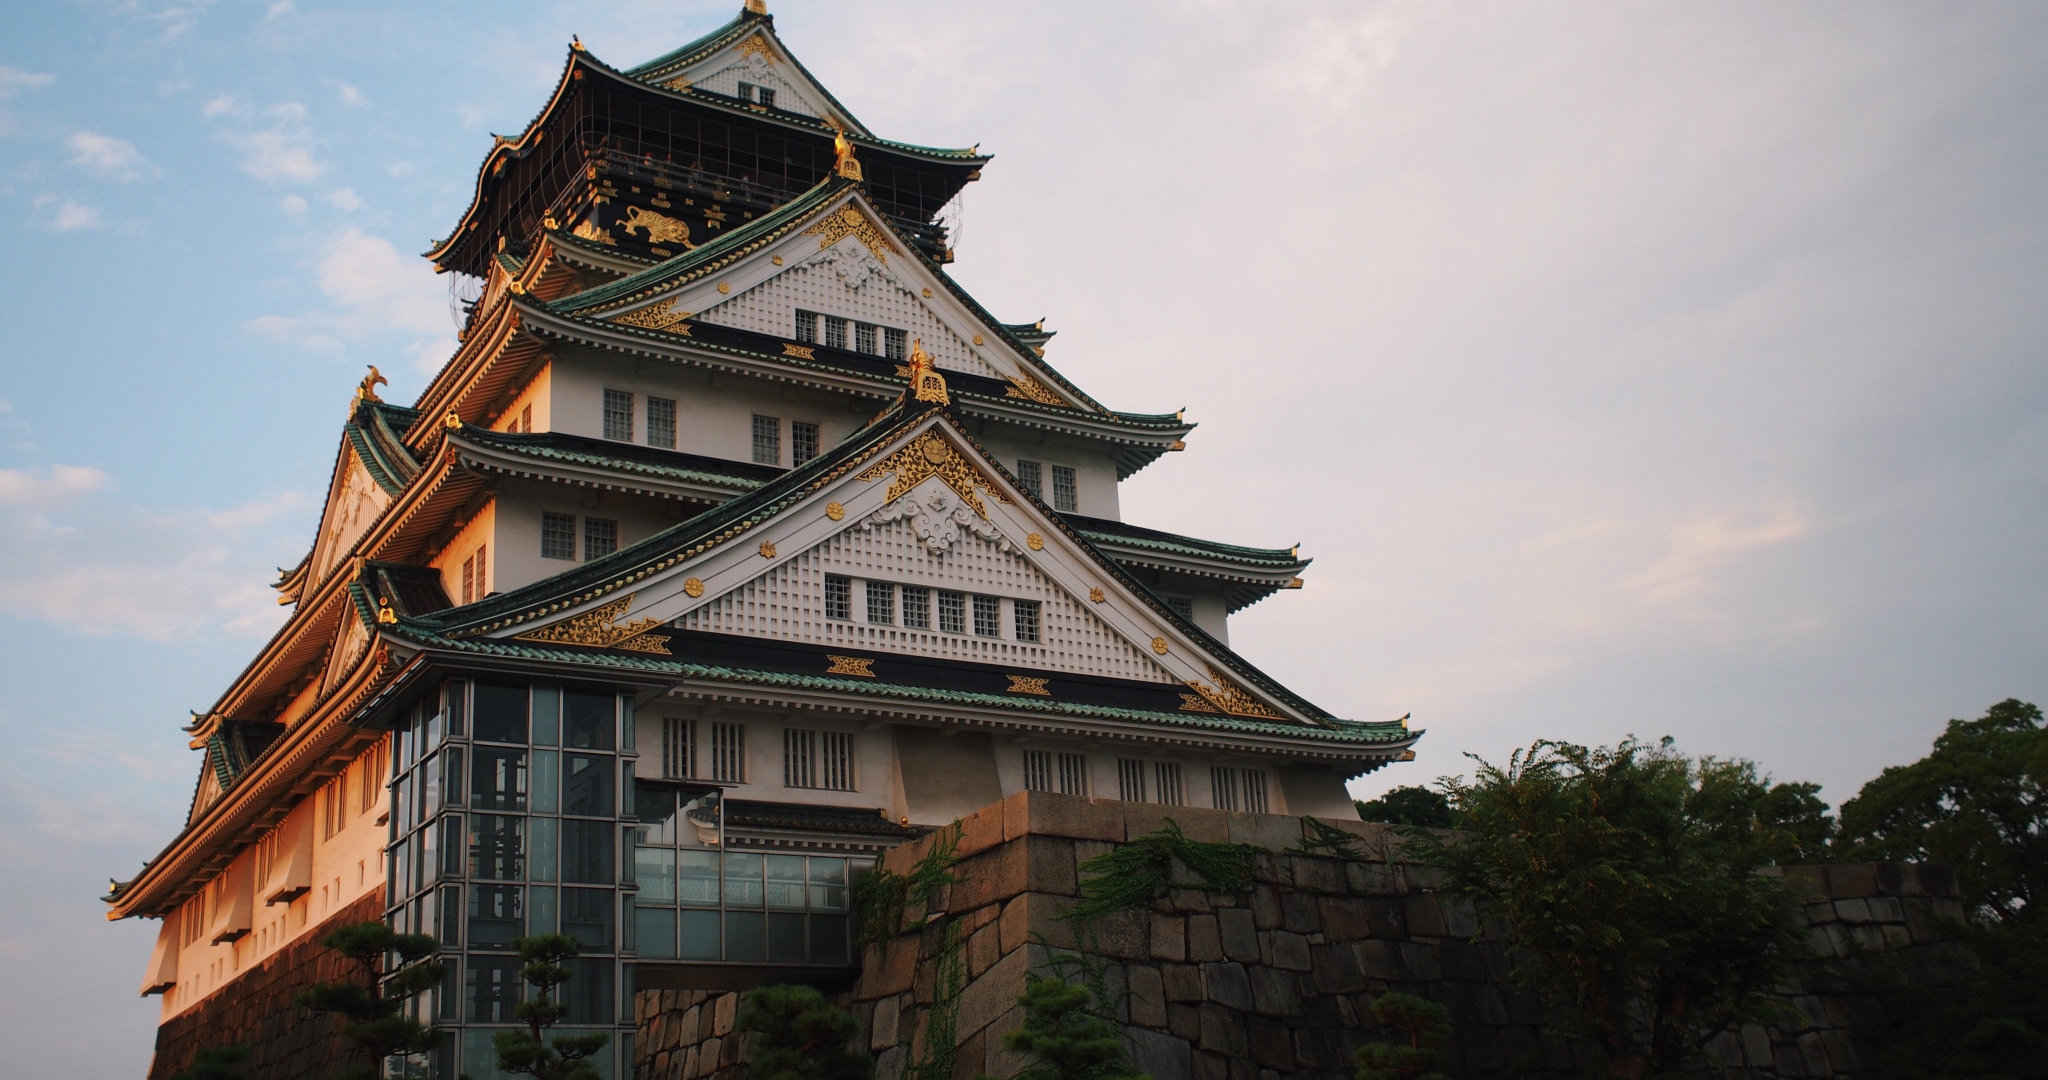 镀金瓦片的日式经典旅游景点特色建筑桌面壁纸-